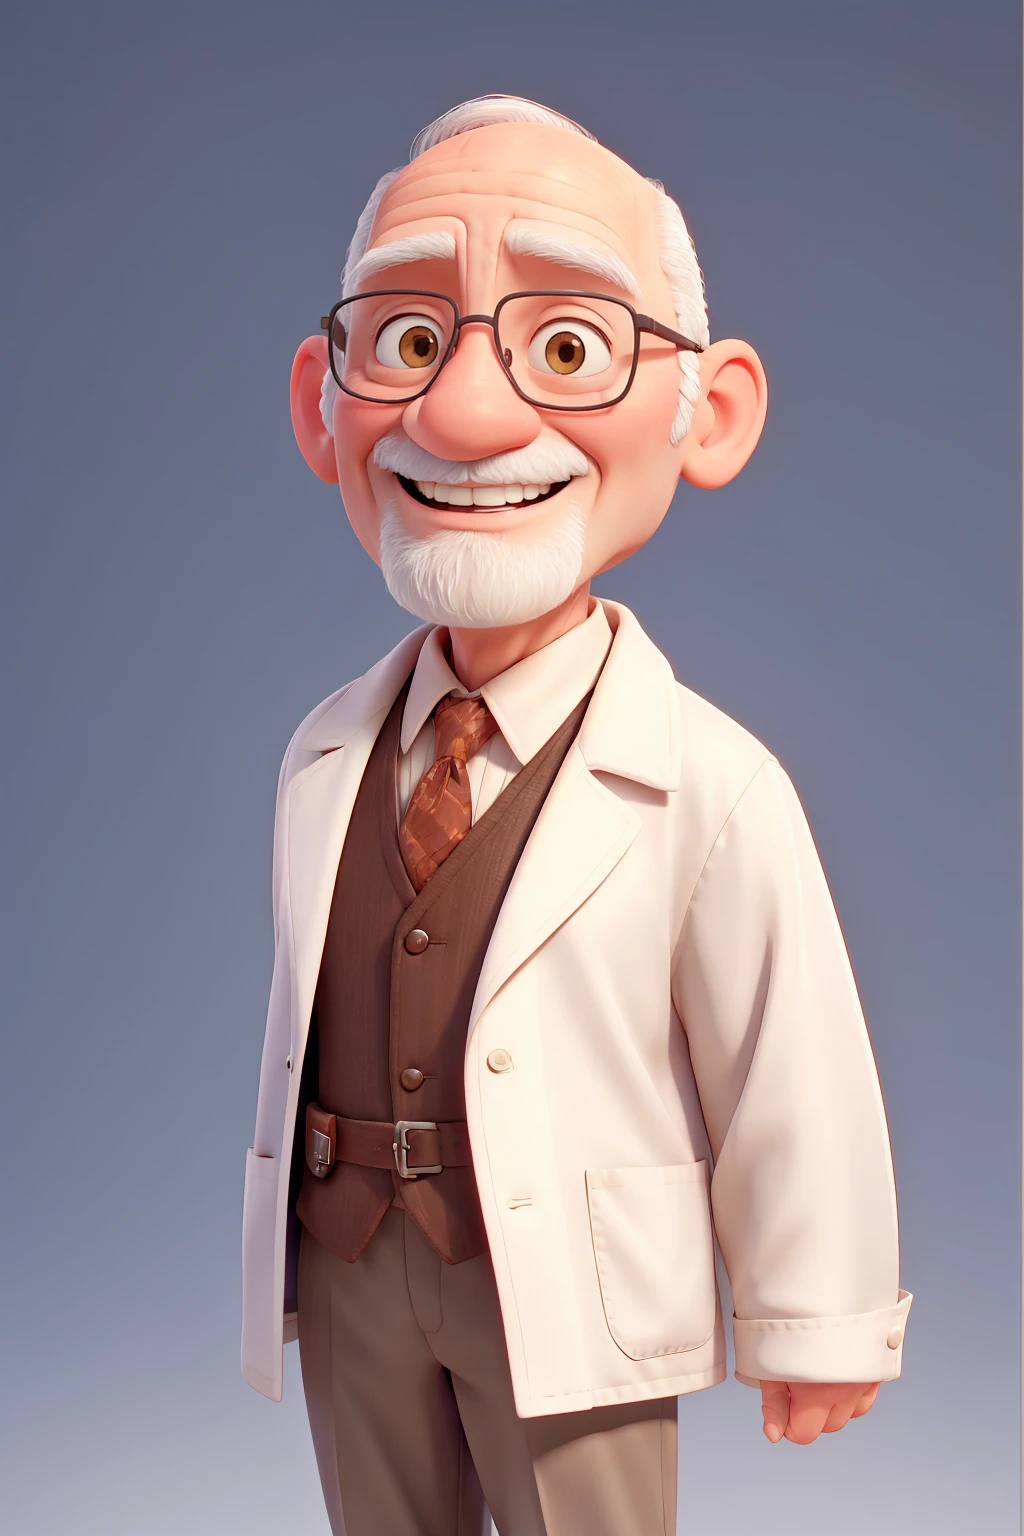 Y un médico viejo y calvo sobre un fondo blanco.. abrigo médico. sonrisa.